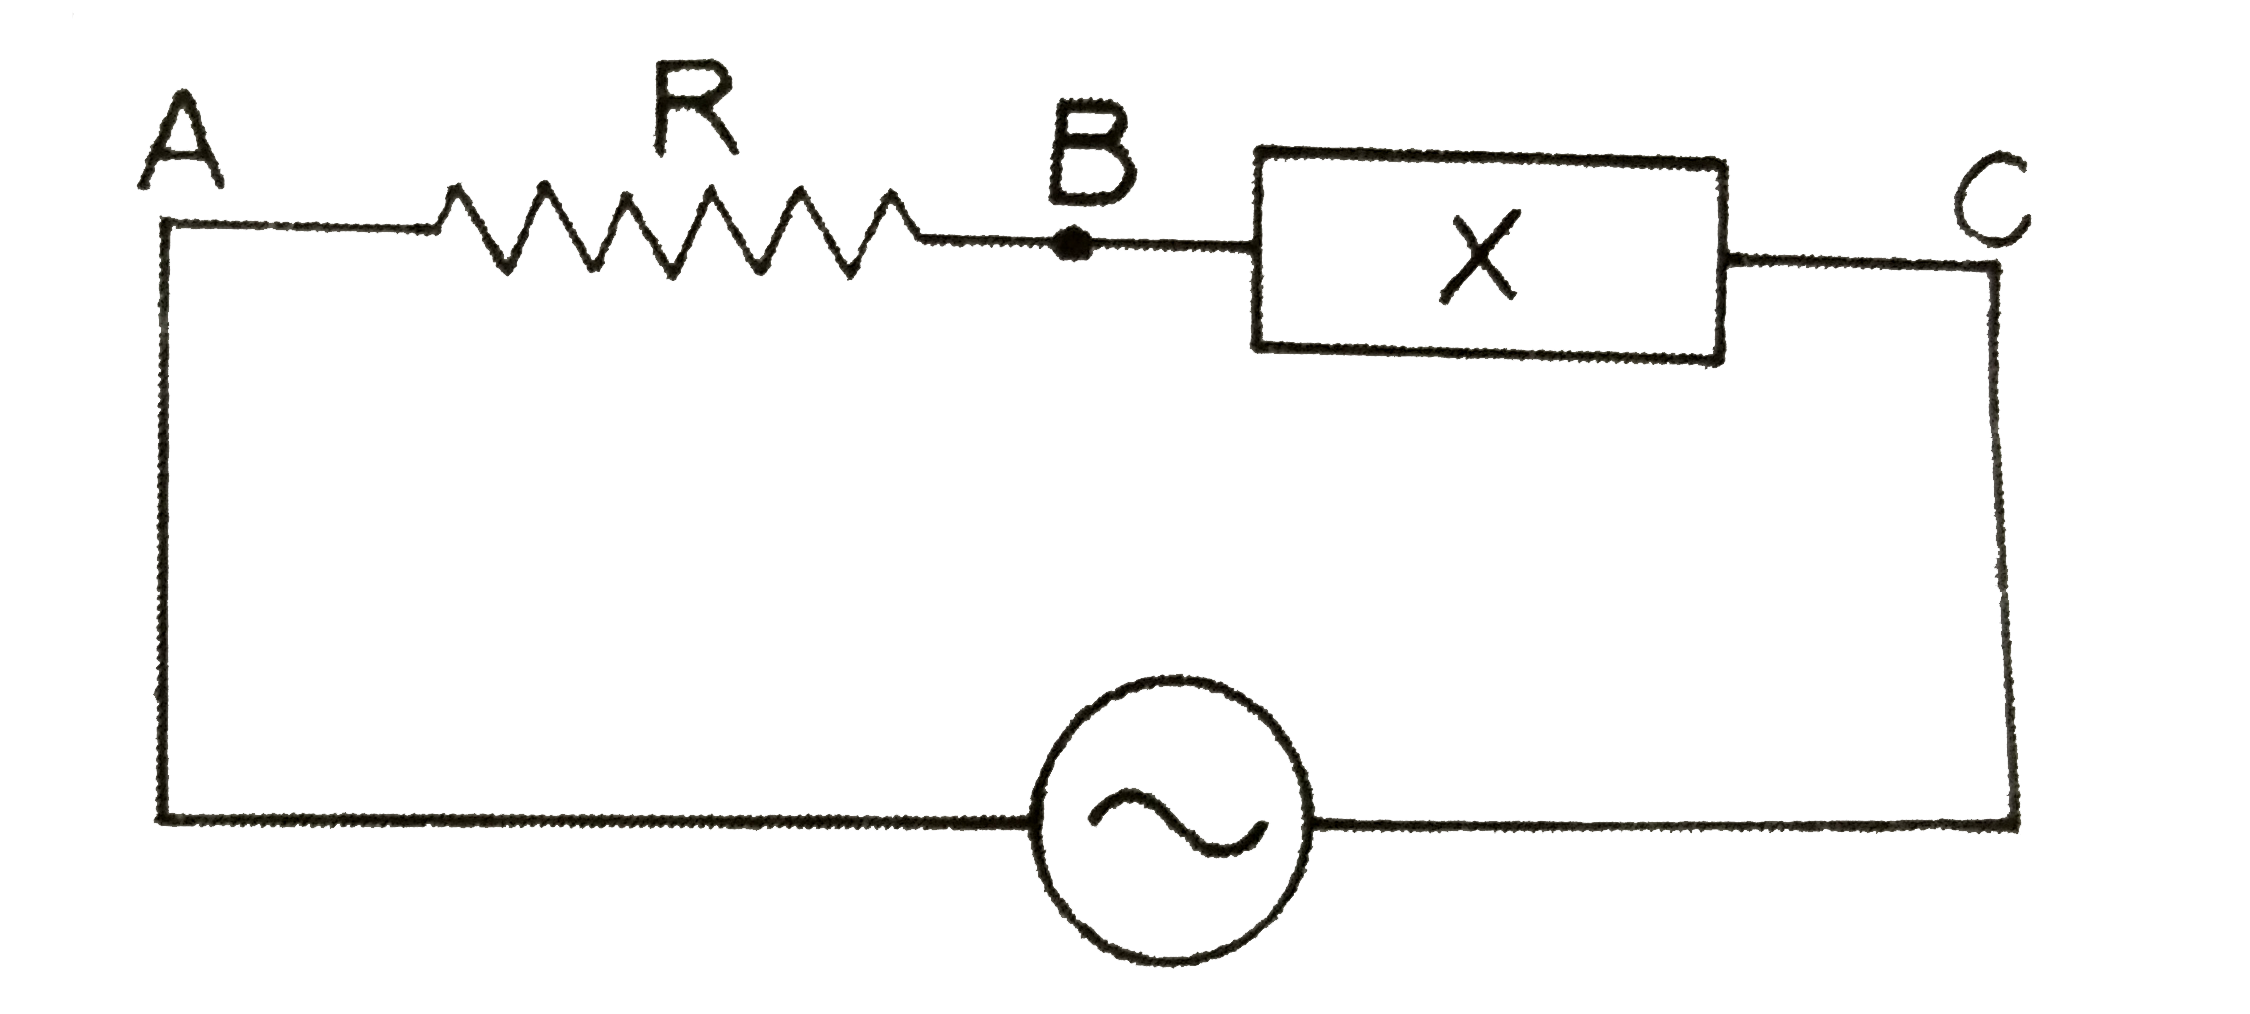 संलग्न चित्र  में R  शुध्द  प्रतिरोध  तथा X  अज्ञात  परिपथ - खण्ड  है  परिपथ  में प्रत्यावर्ती धारा  प्रवाहित  हो रही है  केवल  एक  प्रत्यावर्ती  धारा - वोल्ट्मीटर  में  उपयुक्त  नापे  लेकर  कैसे  ज्ञात  कीजिएगा  कि X (i)  प्रेकरत्व  है ,  (ii)  शुध्द  प्रतिरोध है   अथवा  (iii)   प्रतिरोधहीन  एव  प्रेरकत्वहीन  चालक  है  ?